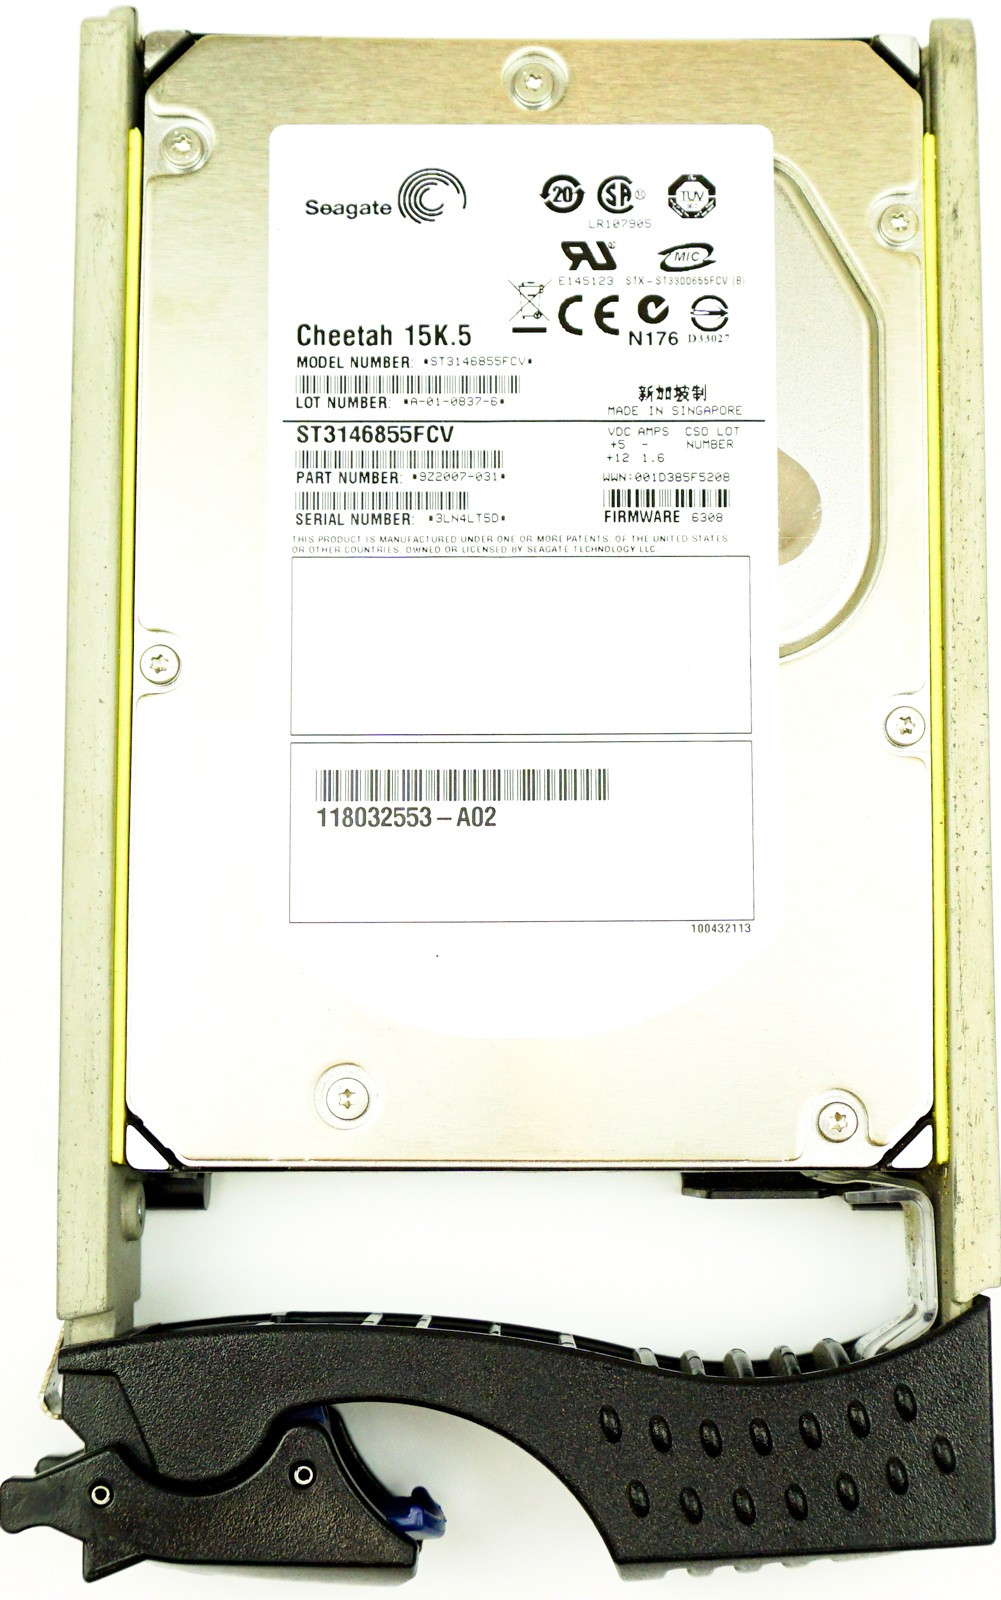 EMC (118032553-A02) 146GB FCAL (LFF) 4Gb/s 15K in Hot-Swap Caddy